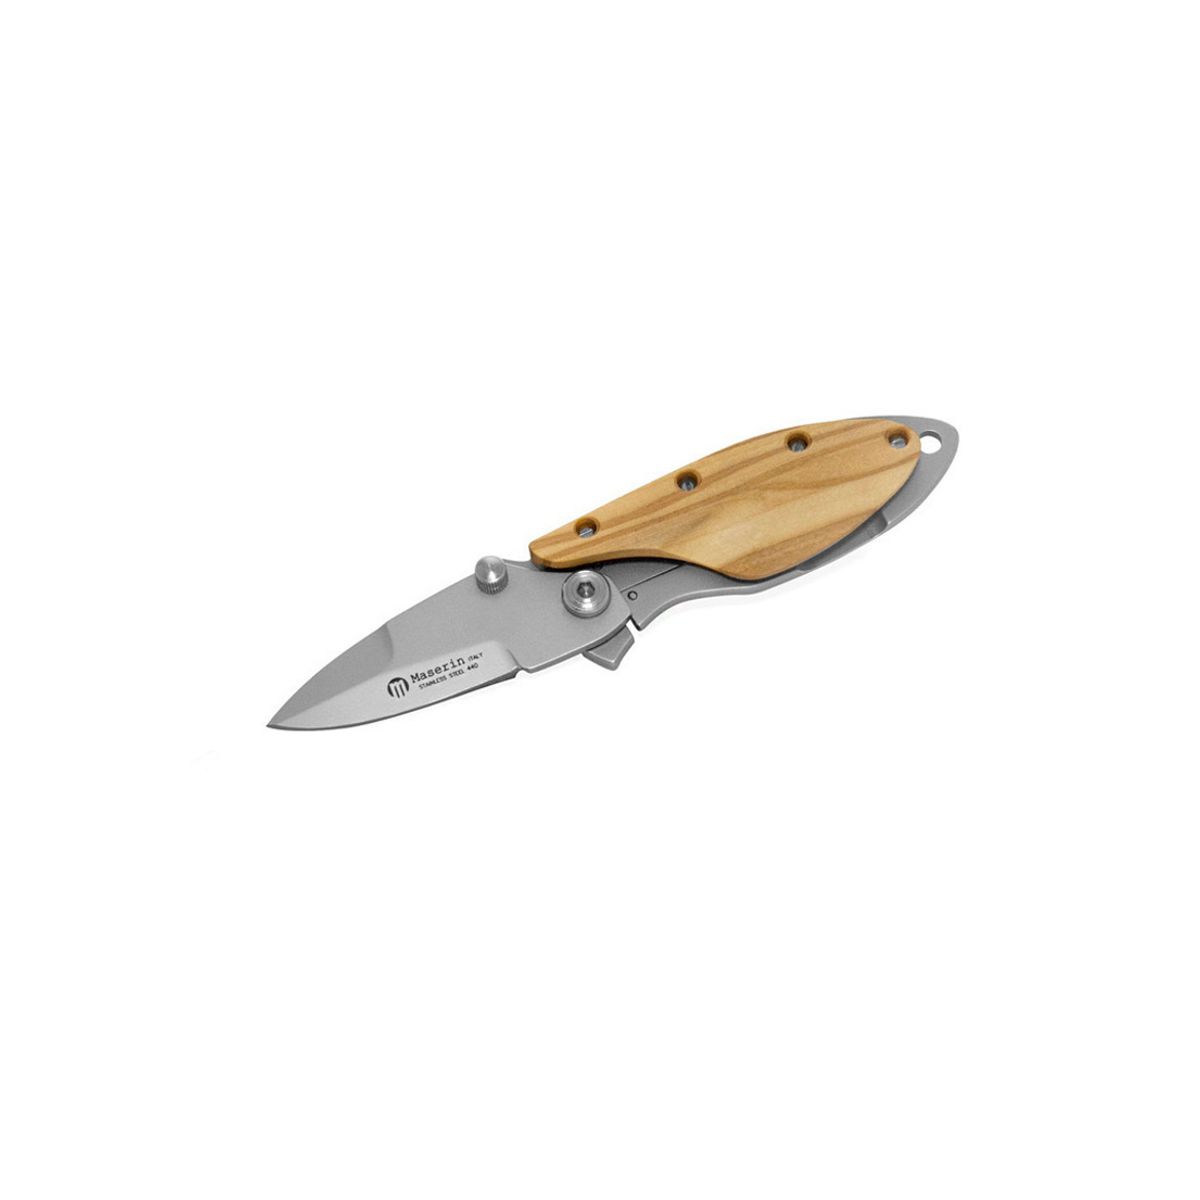 Onefold 550 - Lightweight, practical and elegant pocket knife